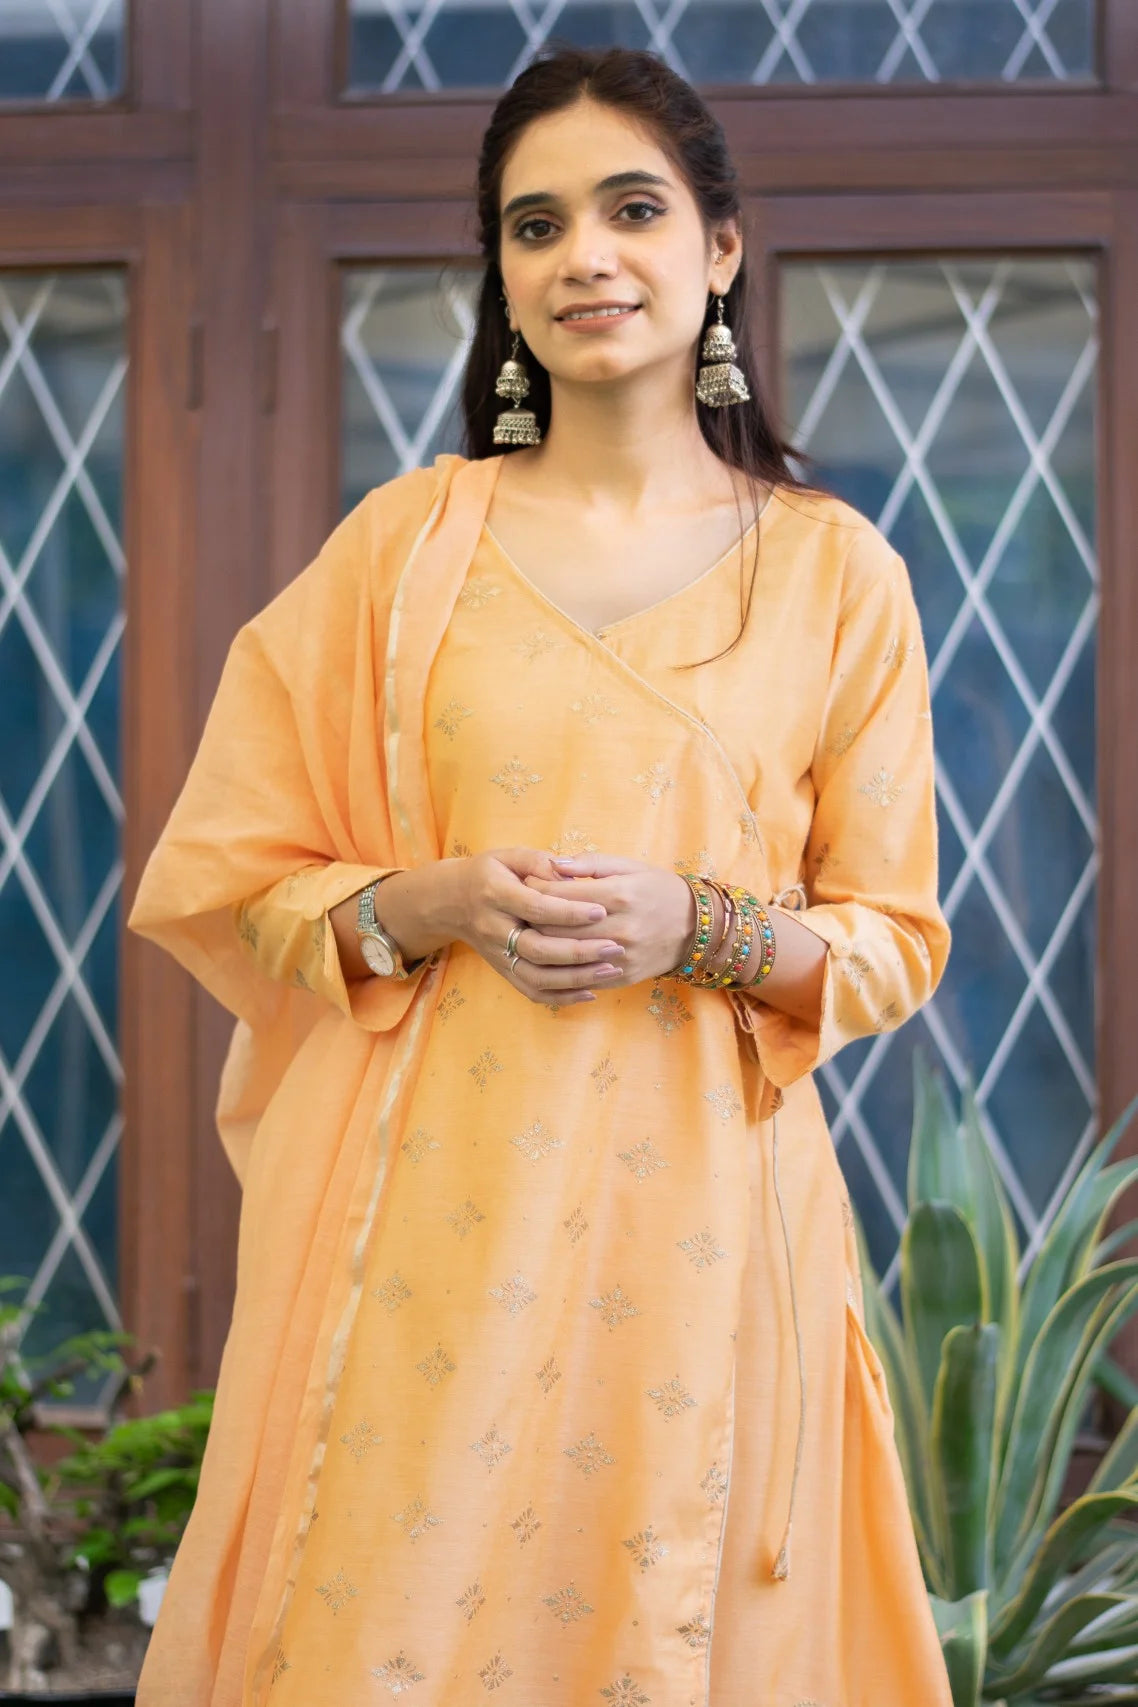 Indian women wearing Peach angarkha style kurtaAn Indian woman wearing a beautiful peach angarkha kurta with intricate embroidery.